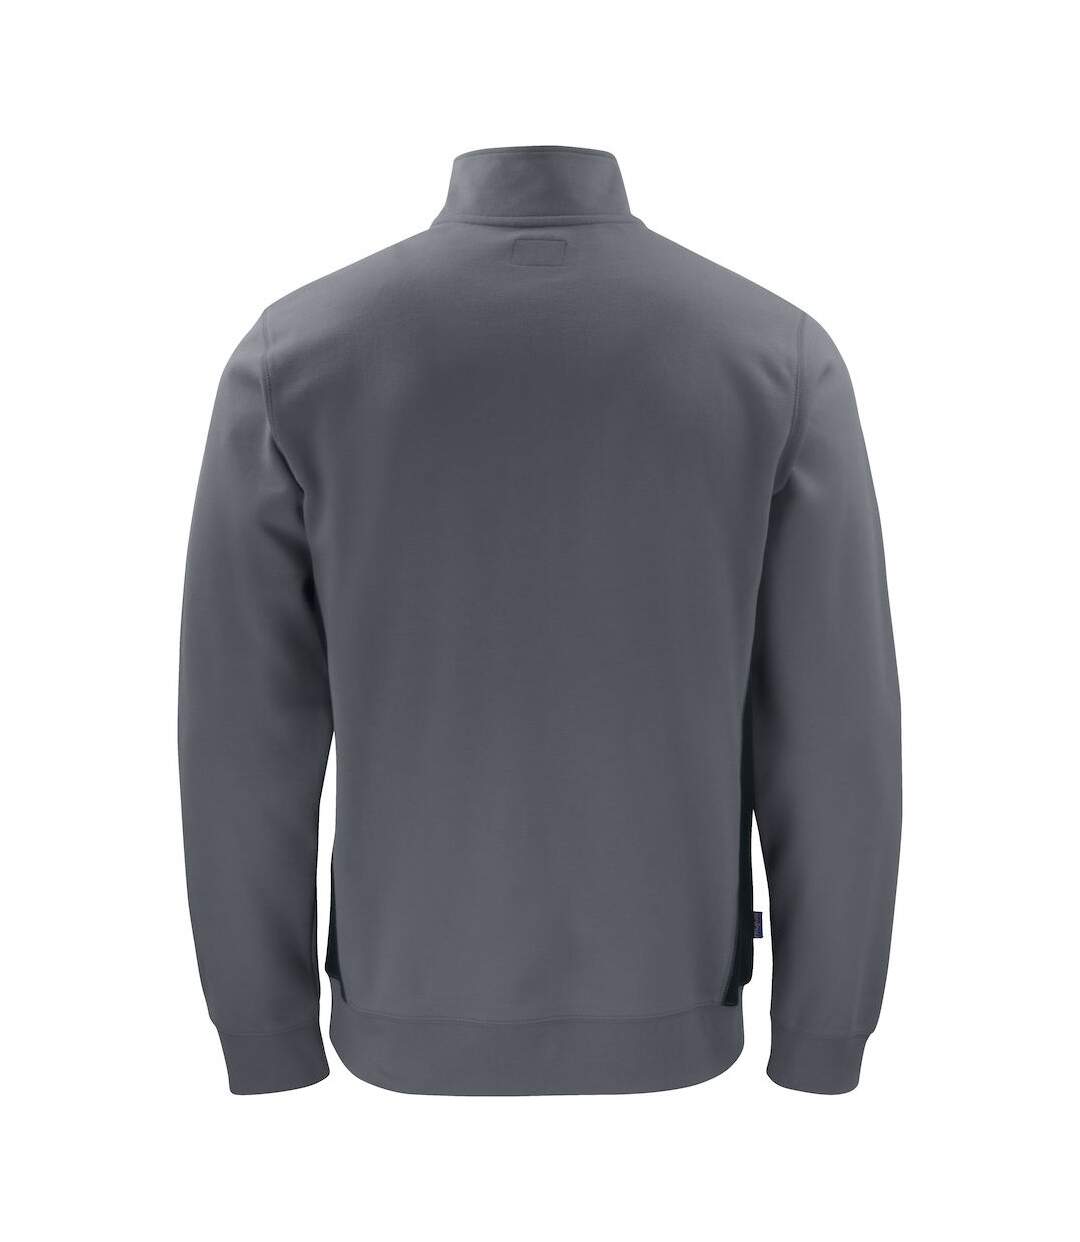 Projob Mens Half Zip Sweatshirt (Gray)